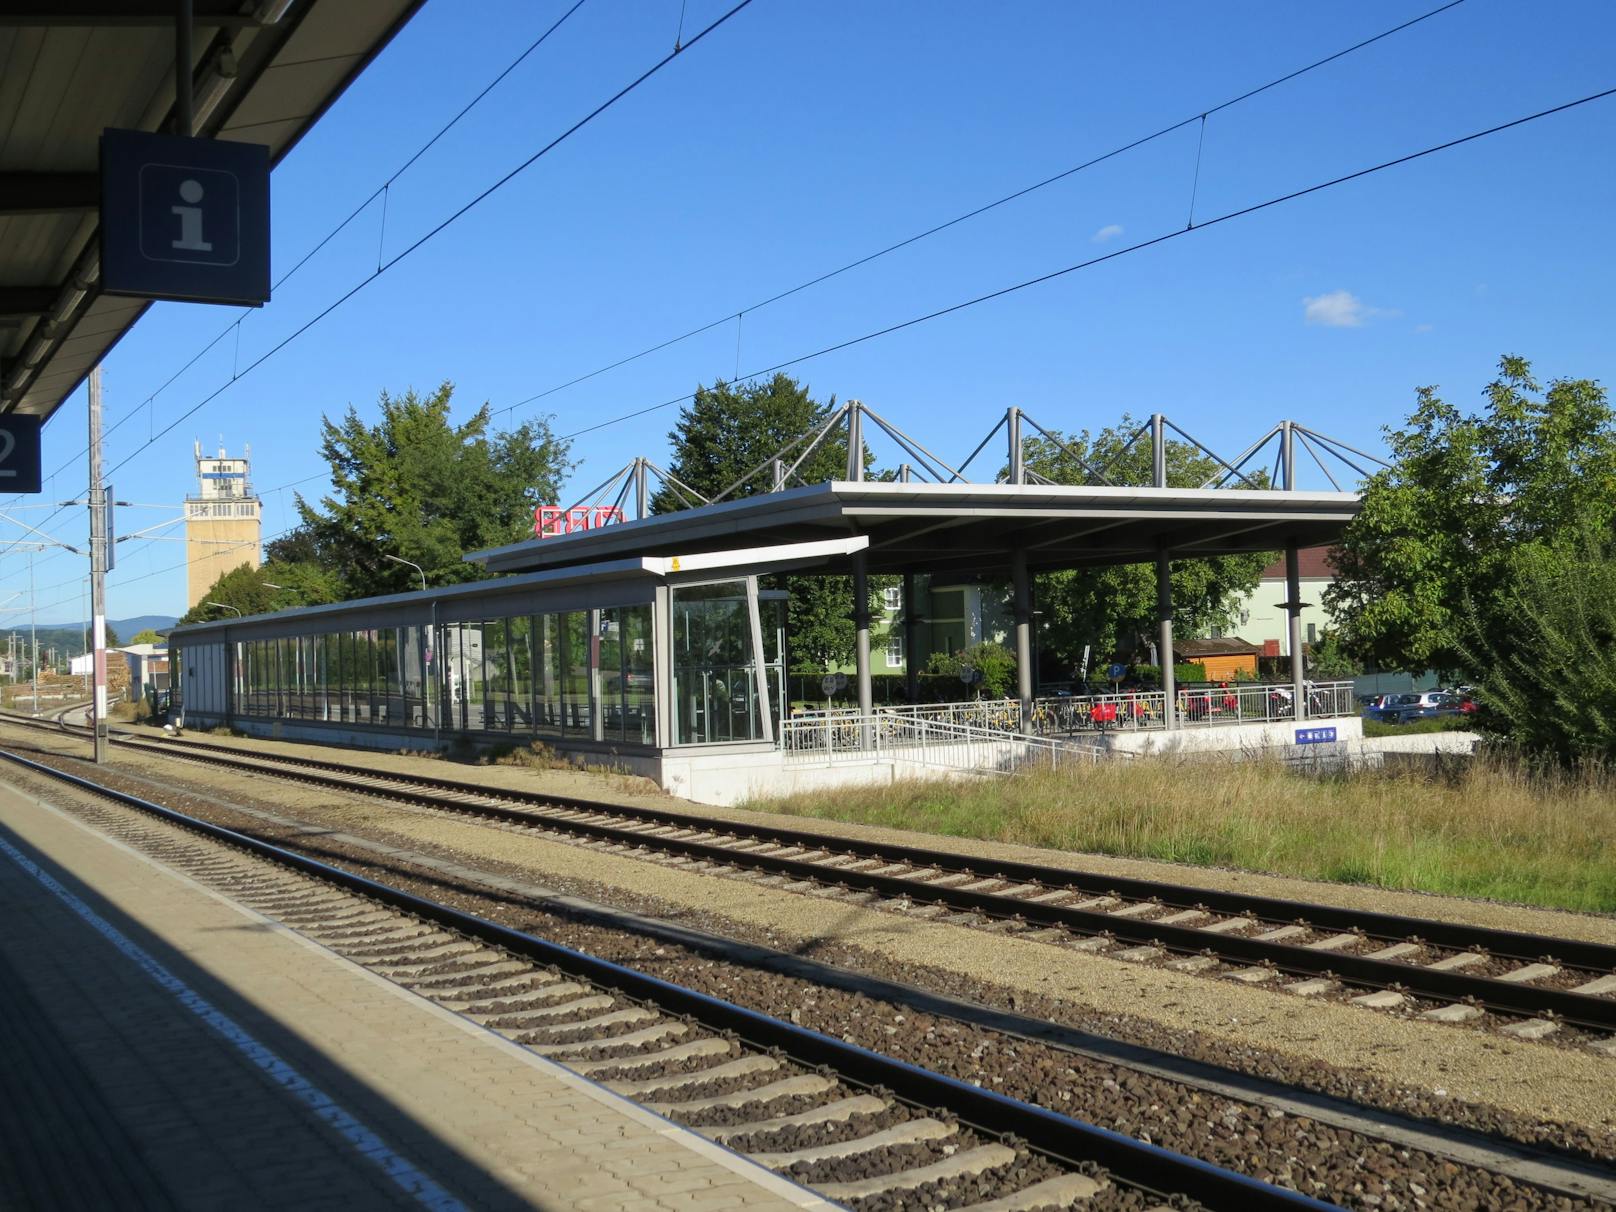 Diebstahl am Bahnhofsareal in Loosdorf